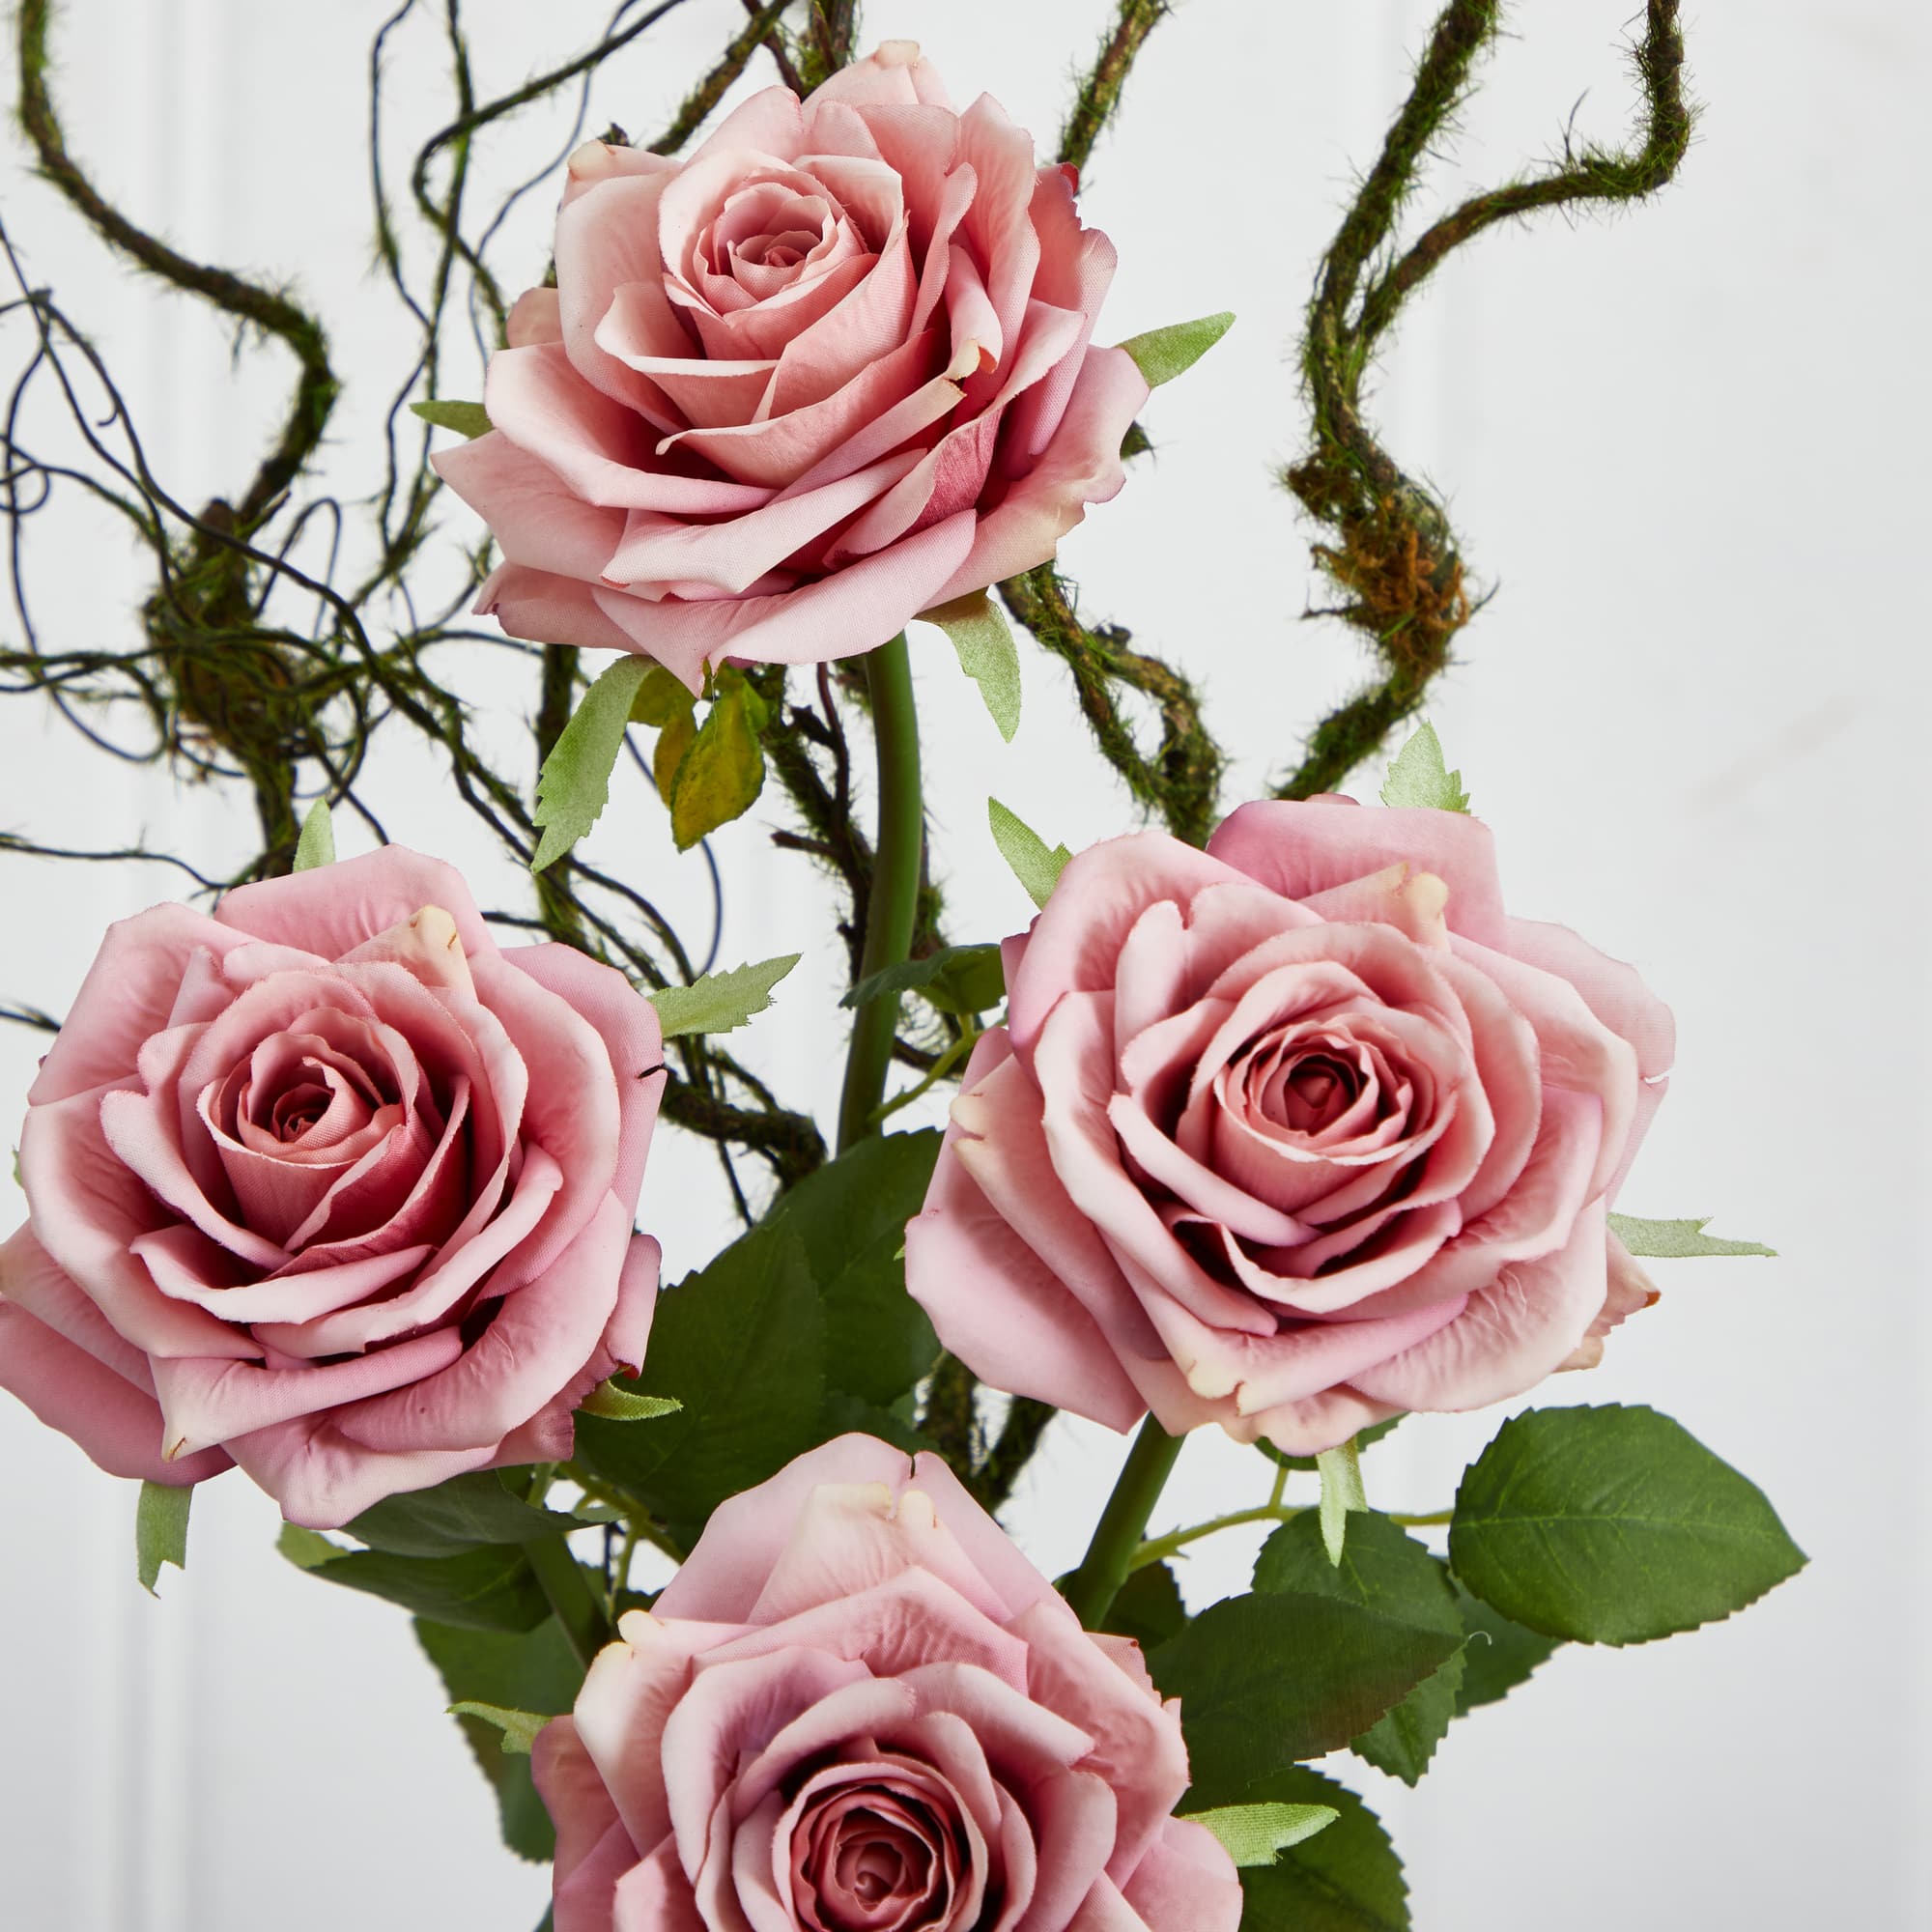 Vintage Rose Artificial Arrangement in Floral Design Pitcher